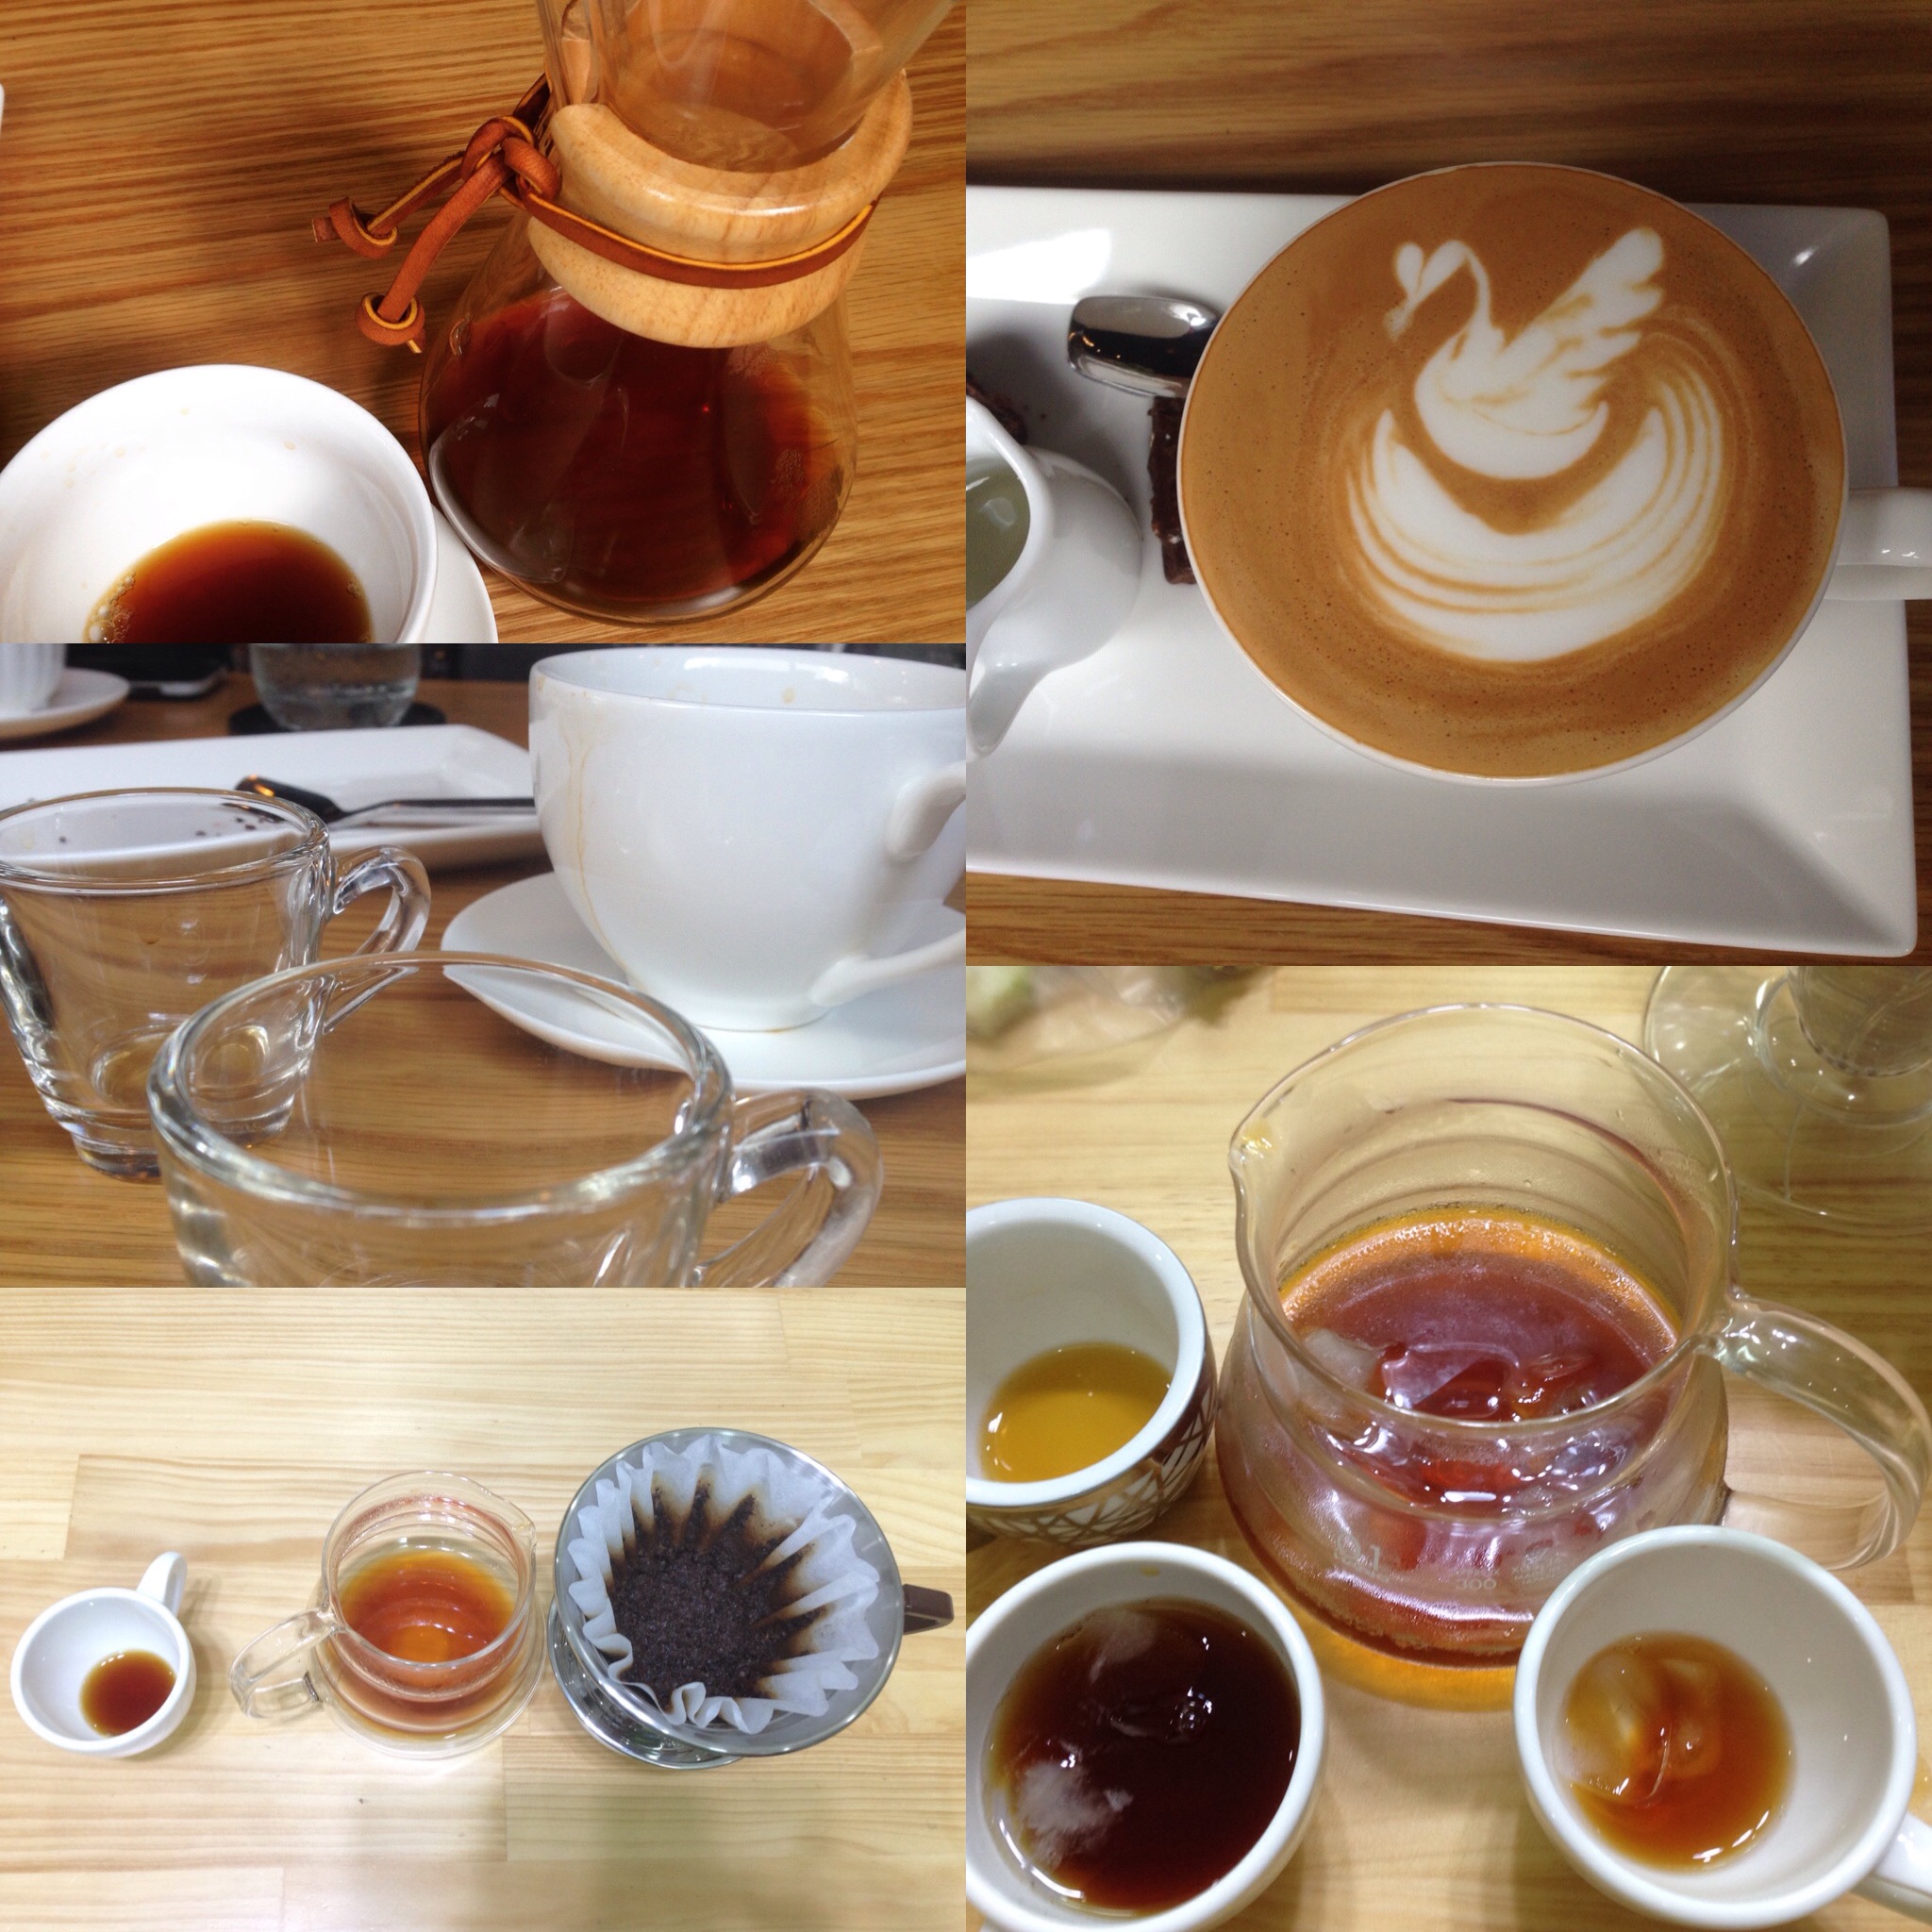 Hình ảnh Cà phê bột 100% nguyên chất truyền thống số 3 Coffee Tree 500gr thơm ngon, đậm đà, gu mạnh (Cà phê) 